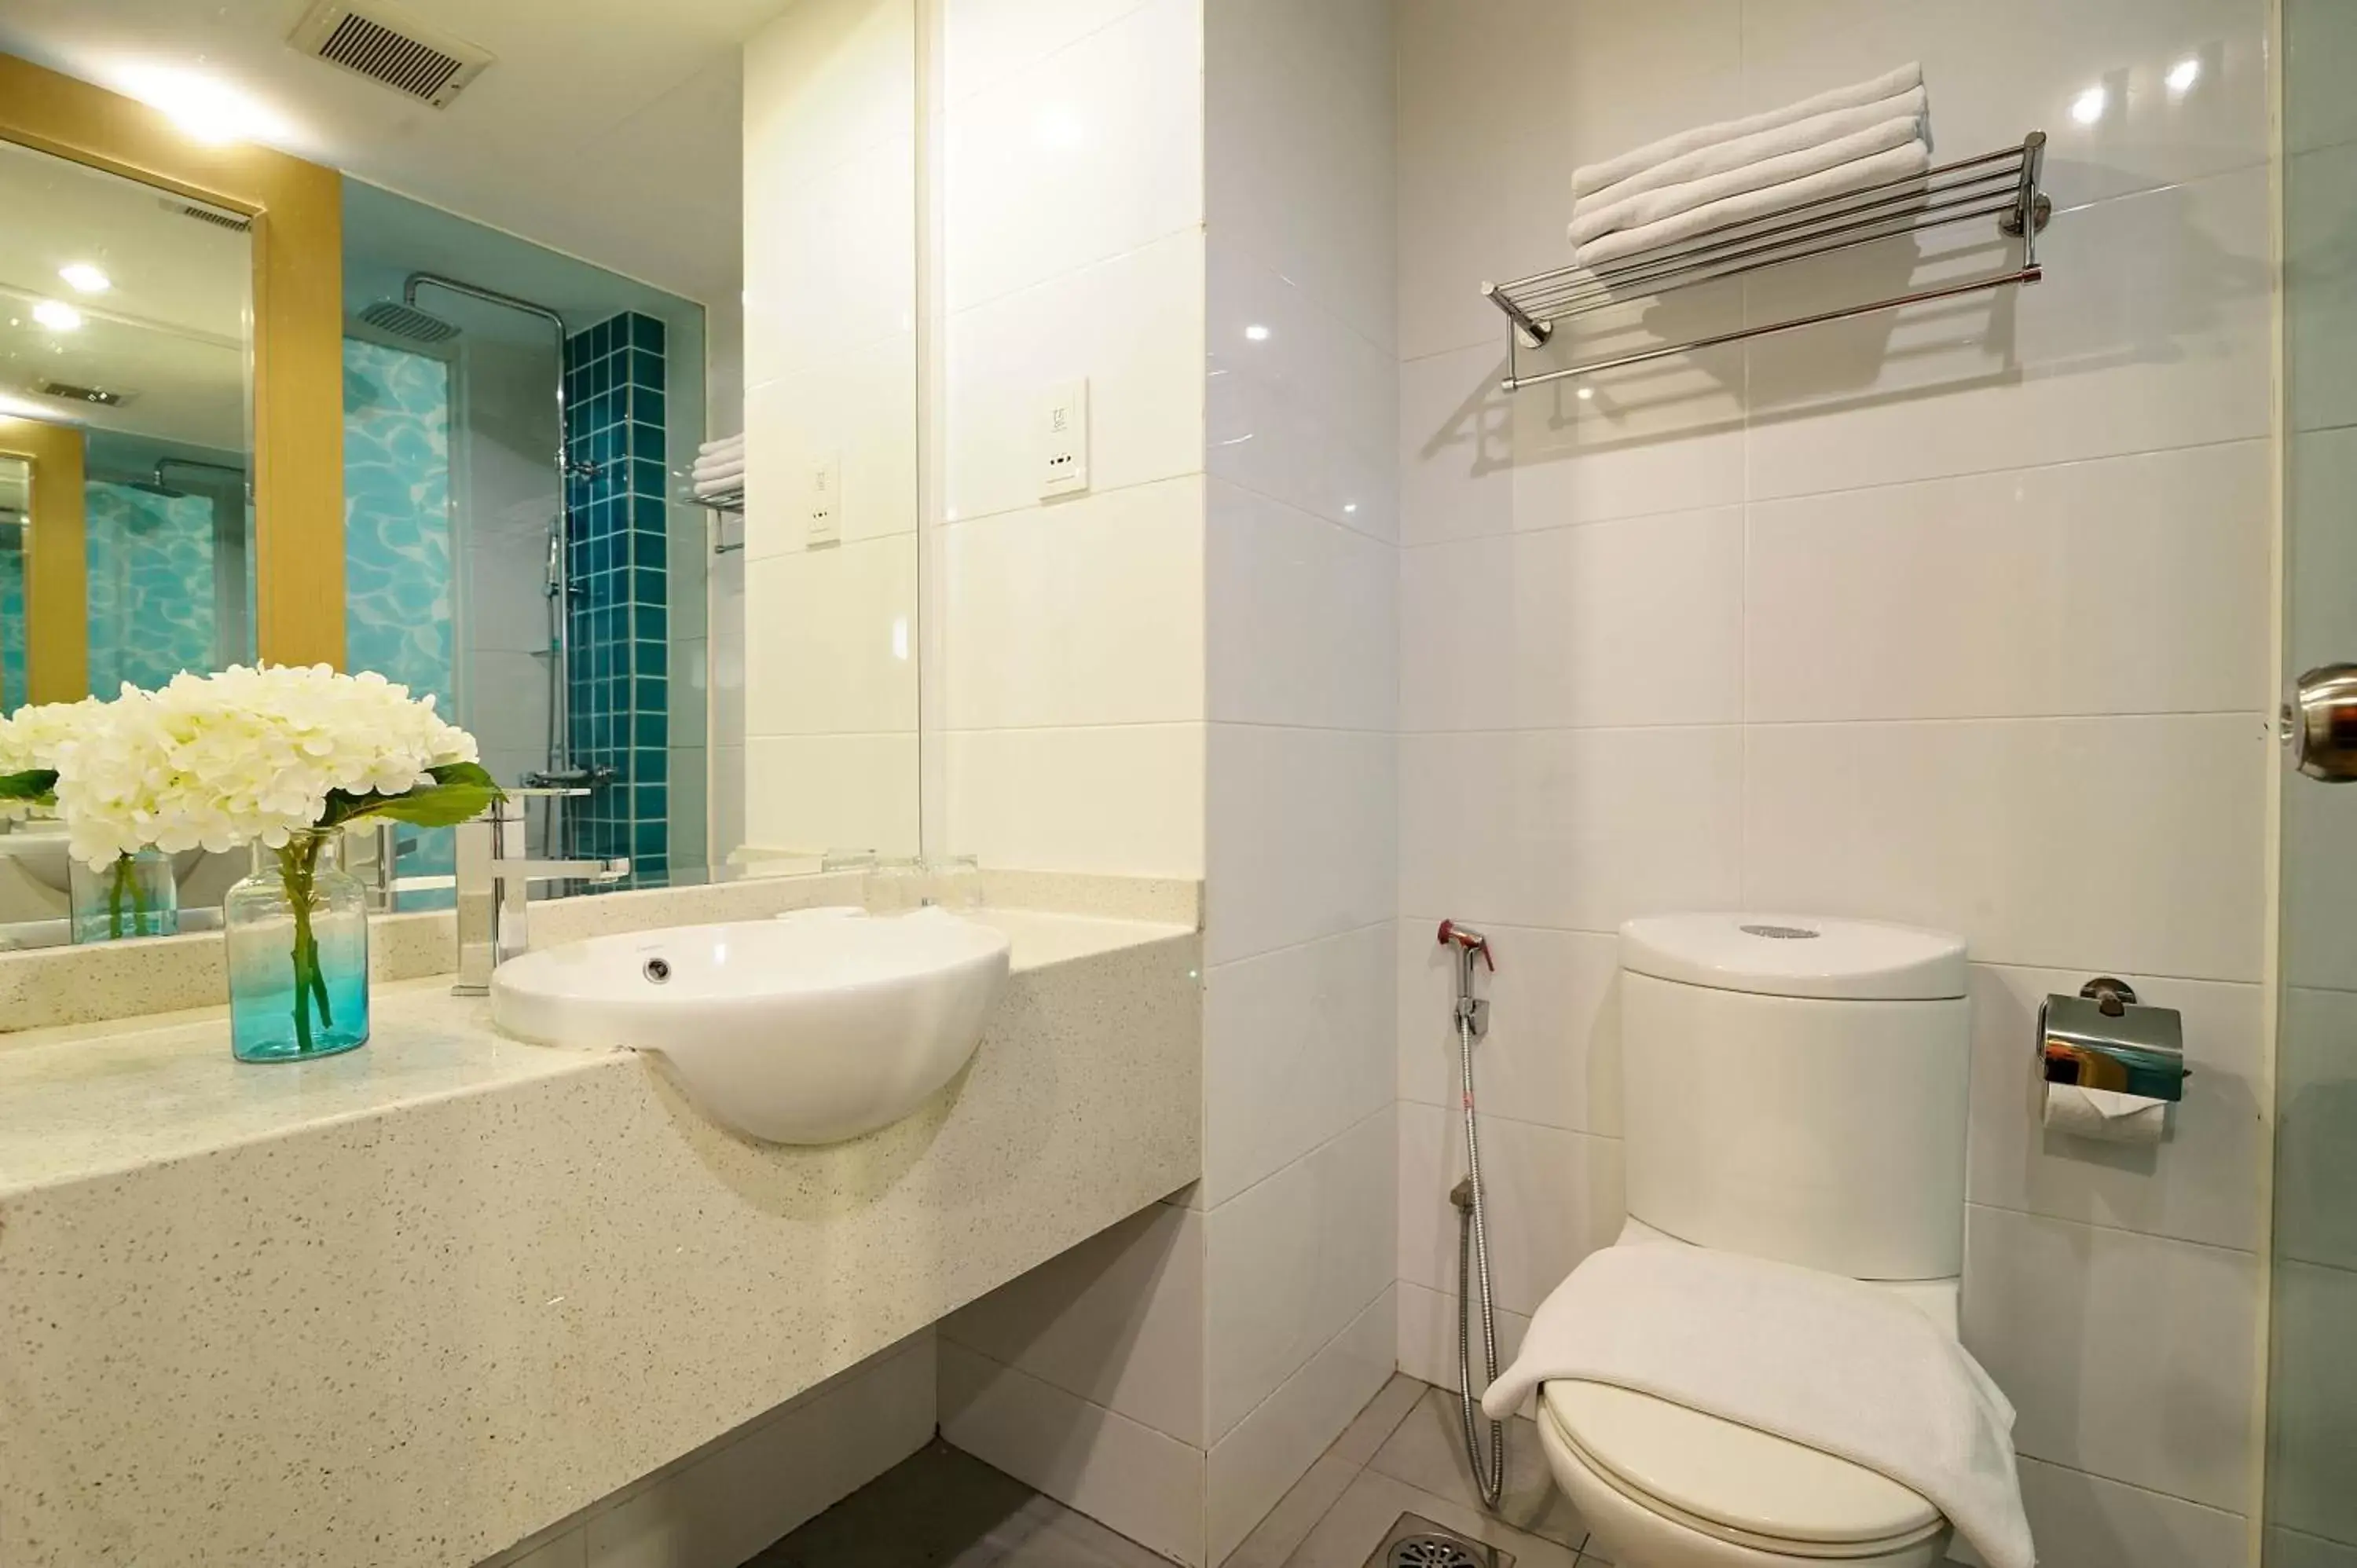 Toilet, Bathroom in Oceania Hotel